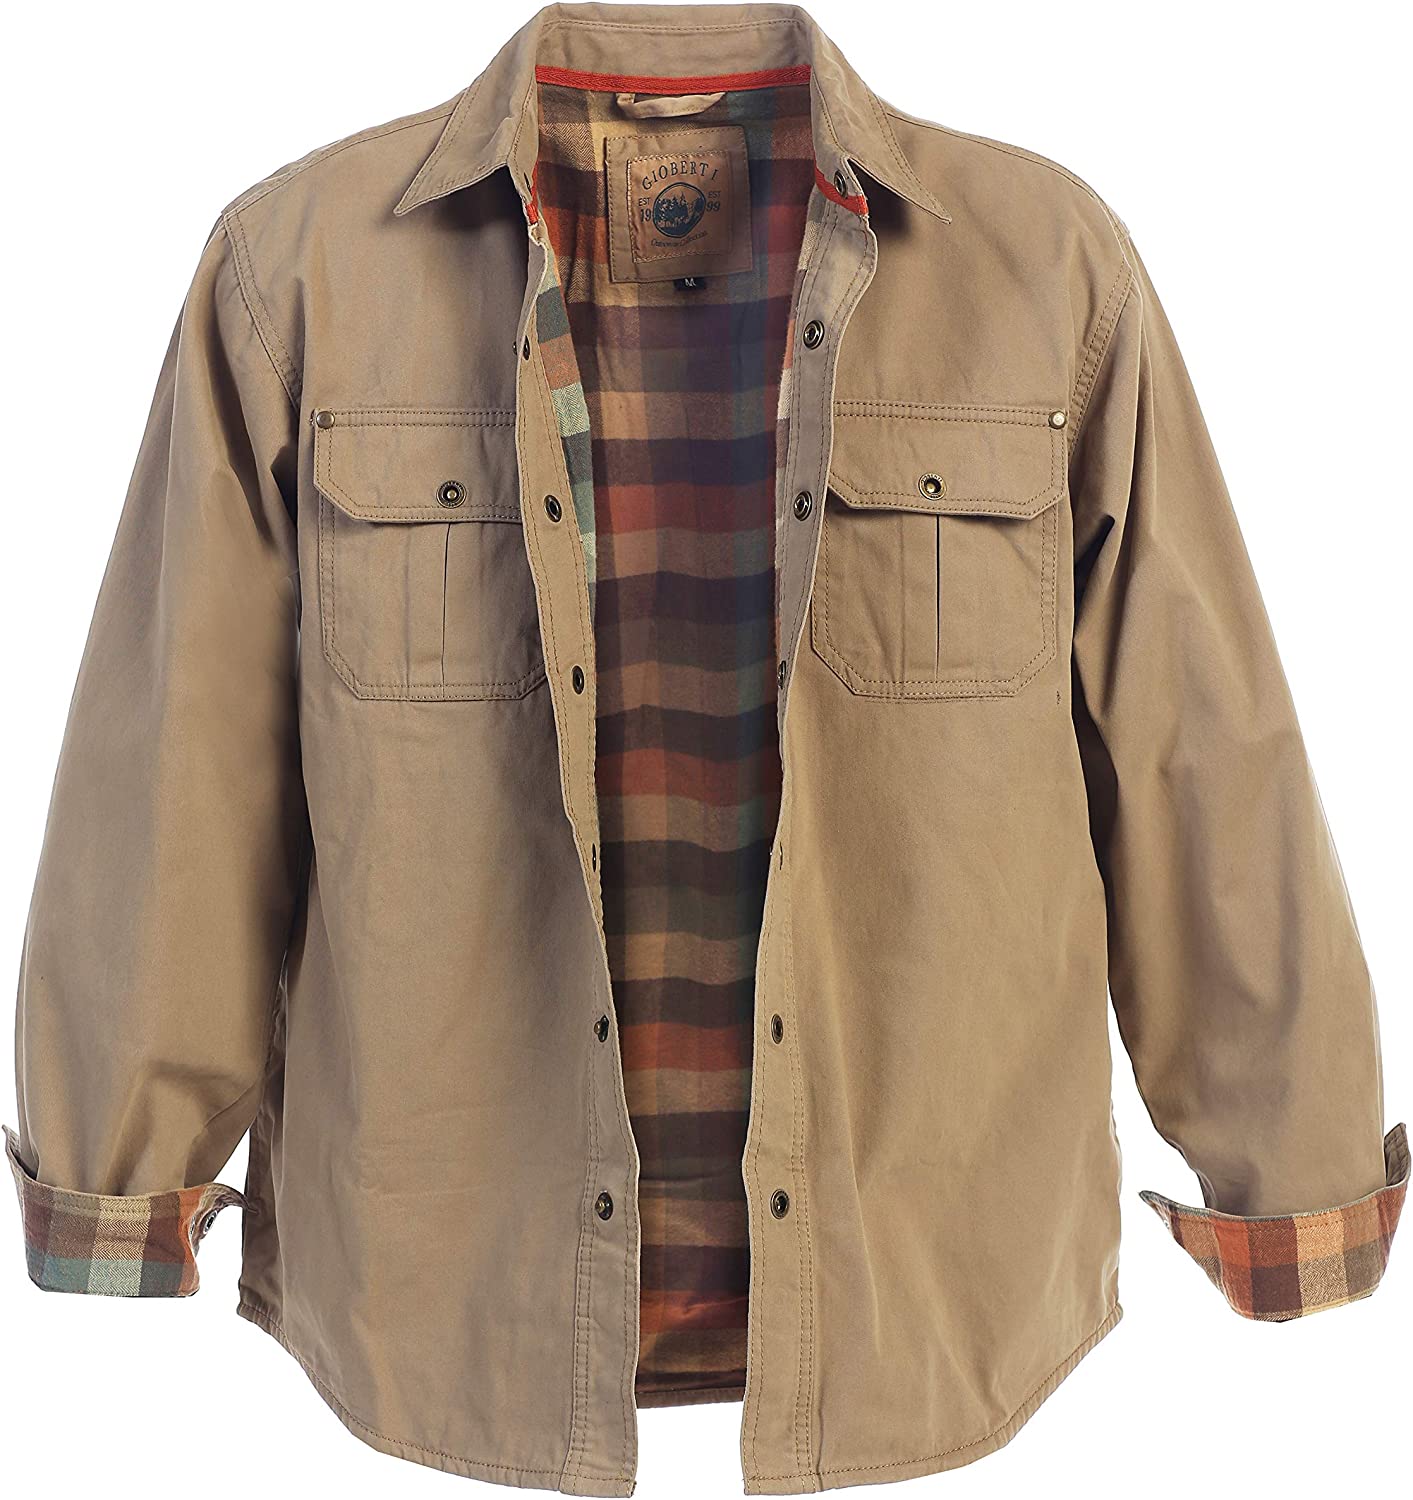 Eureka Heavyweight Shirt Jacket - Light Mustard Herringbone Twill – Grayers